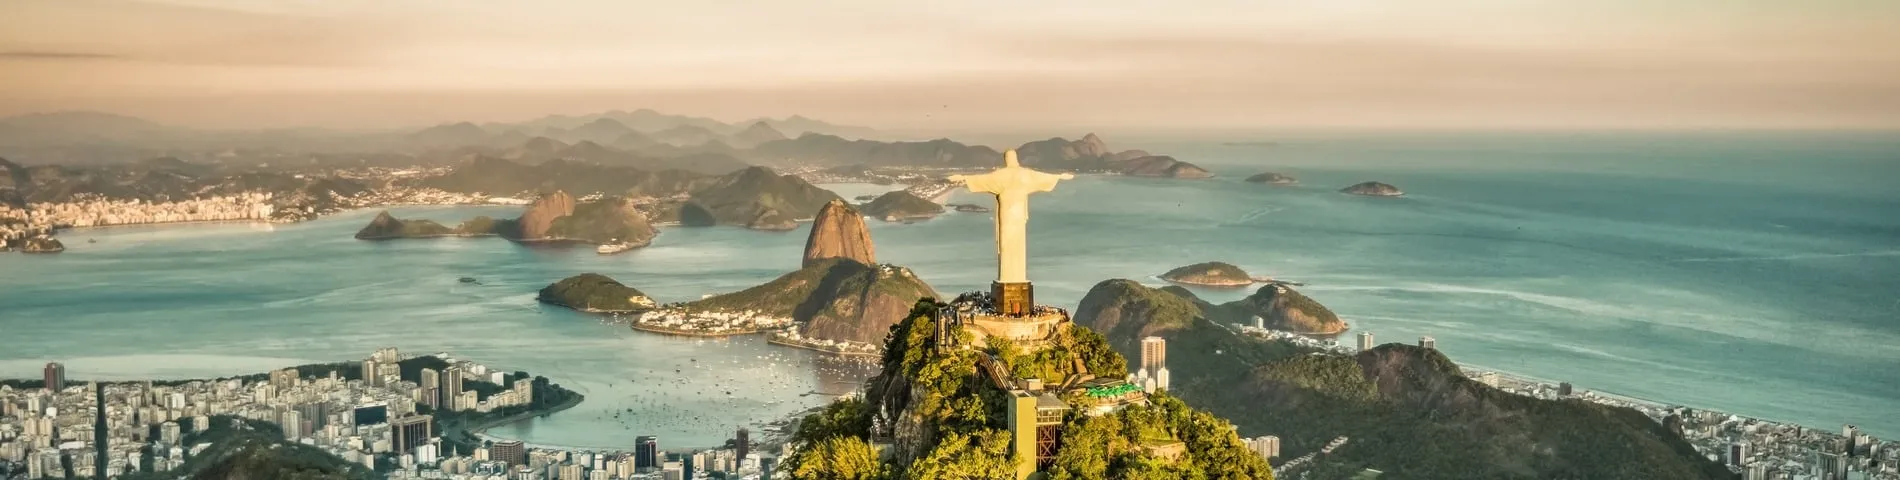 Rio de Janeiro - Standard